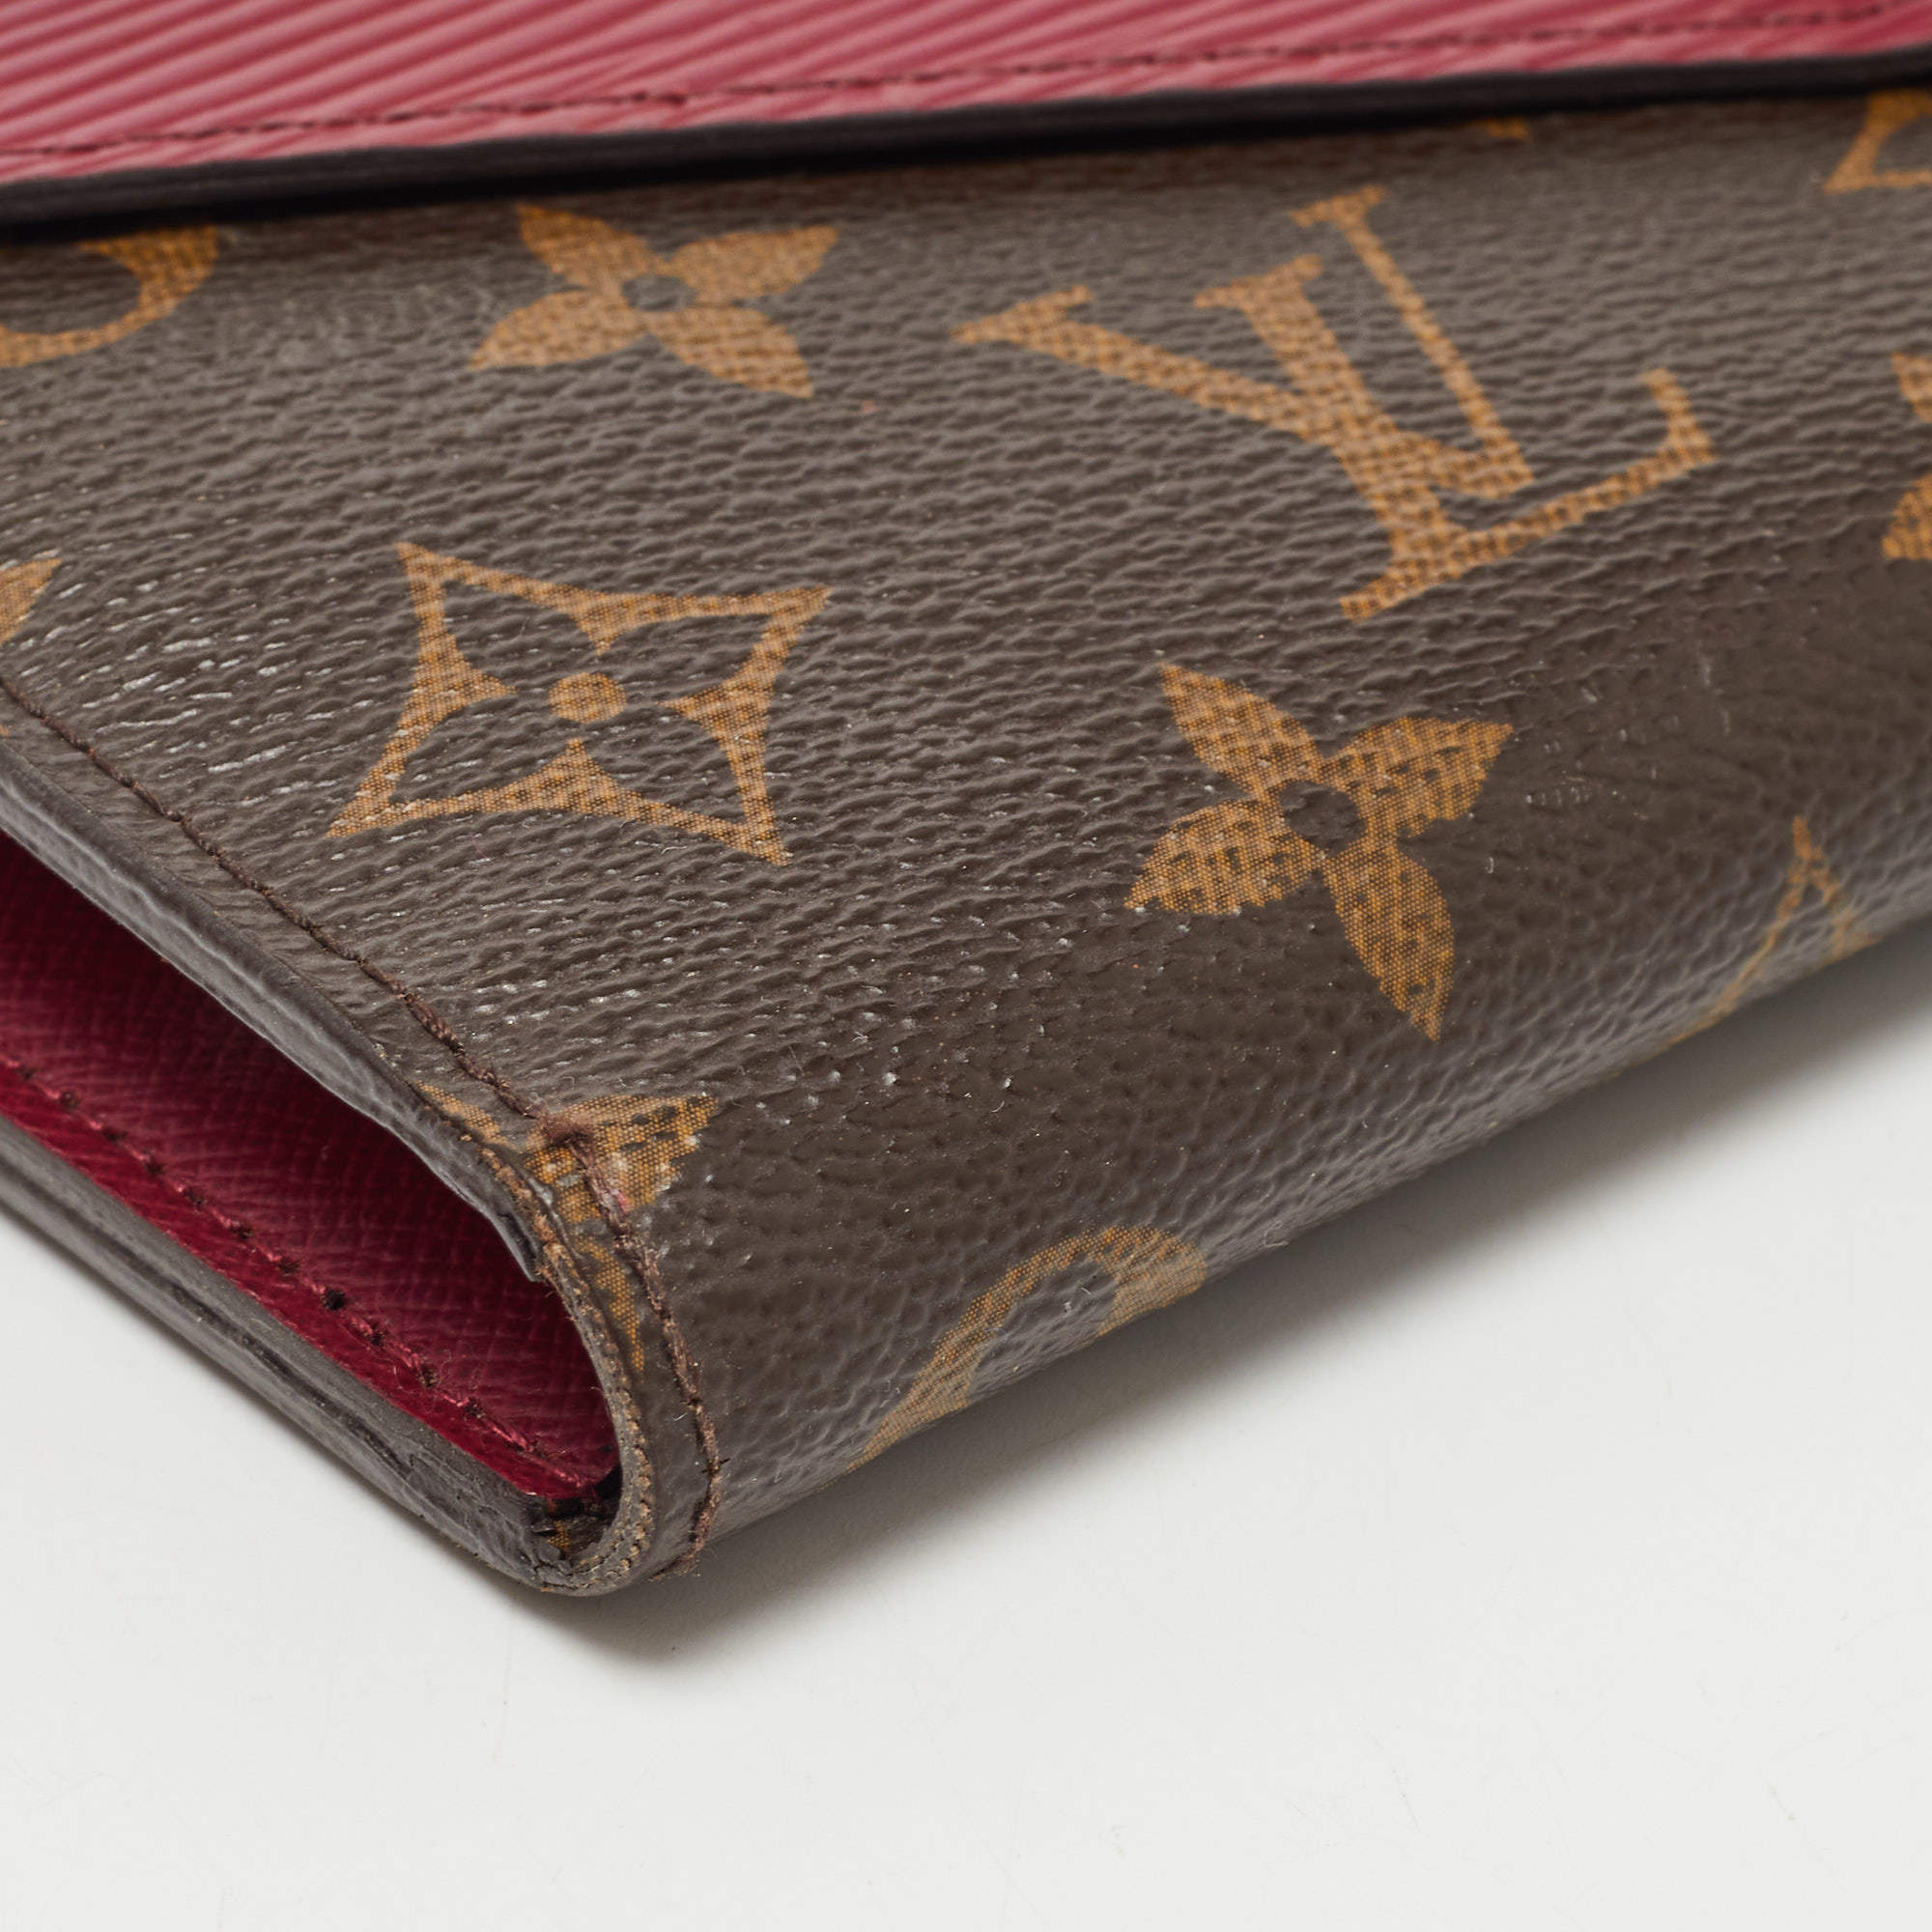 🔥NEW LOUIS VUITTON Marie-Lou Long Wallet Monogram Epi Leather Fuchsia RARE  GIFT